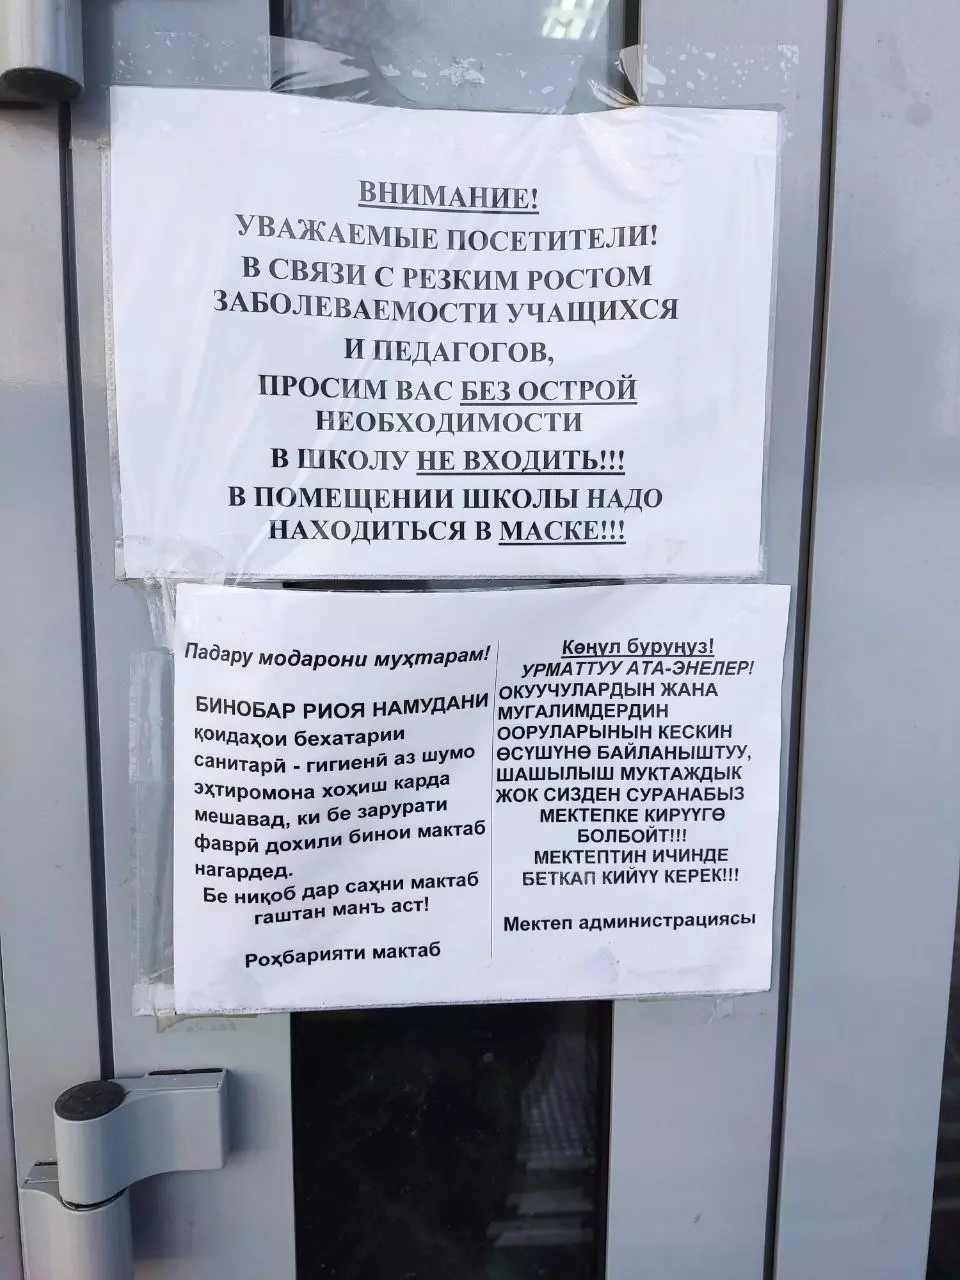 Объявление на иностранном языке в новосибирской школе вызвало возмущение.